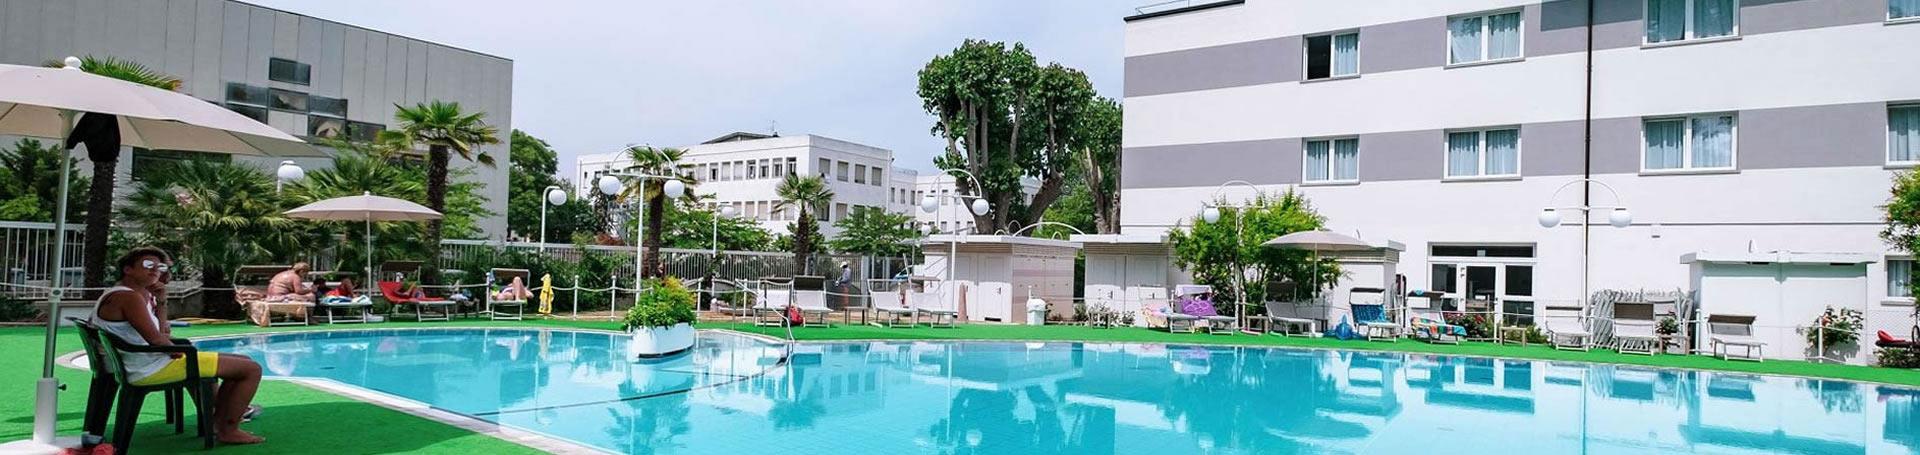 greenvillagecesenatico fr hotel-avec-piscine-cesenatico 011